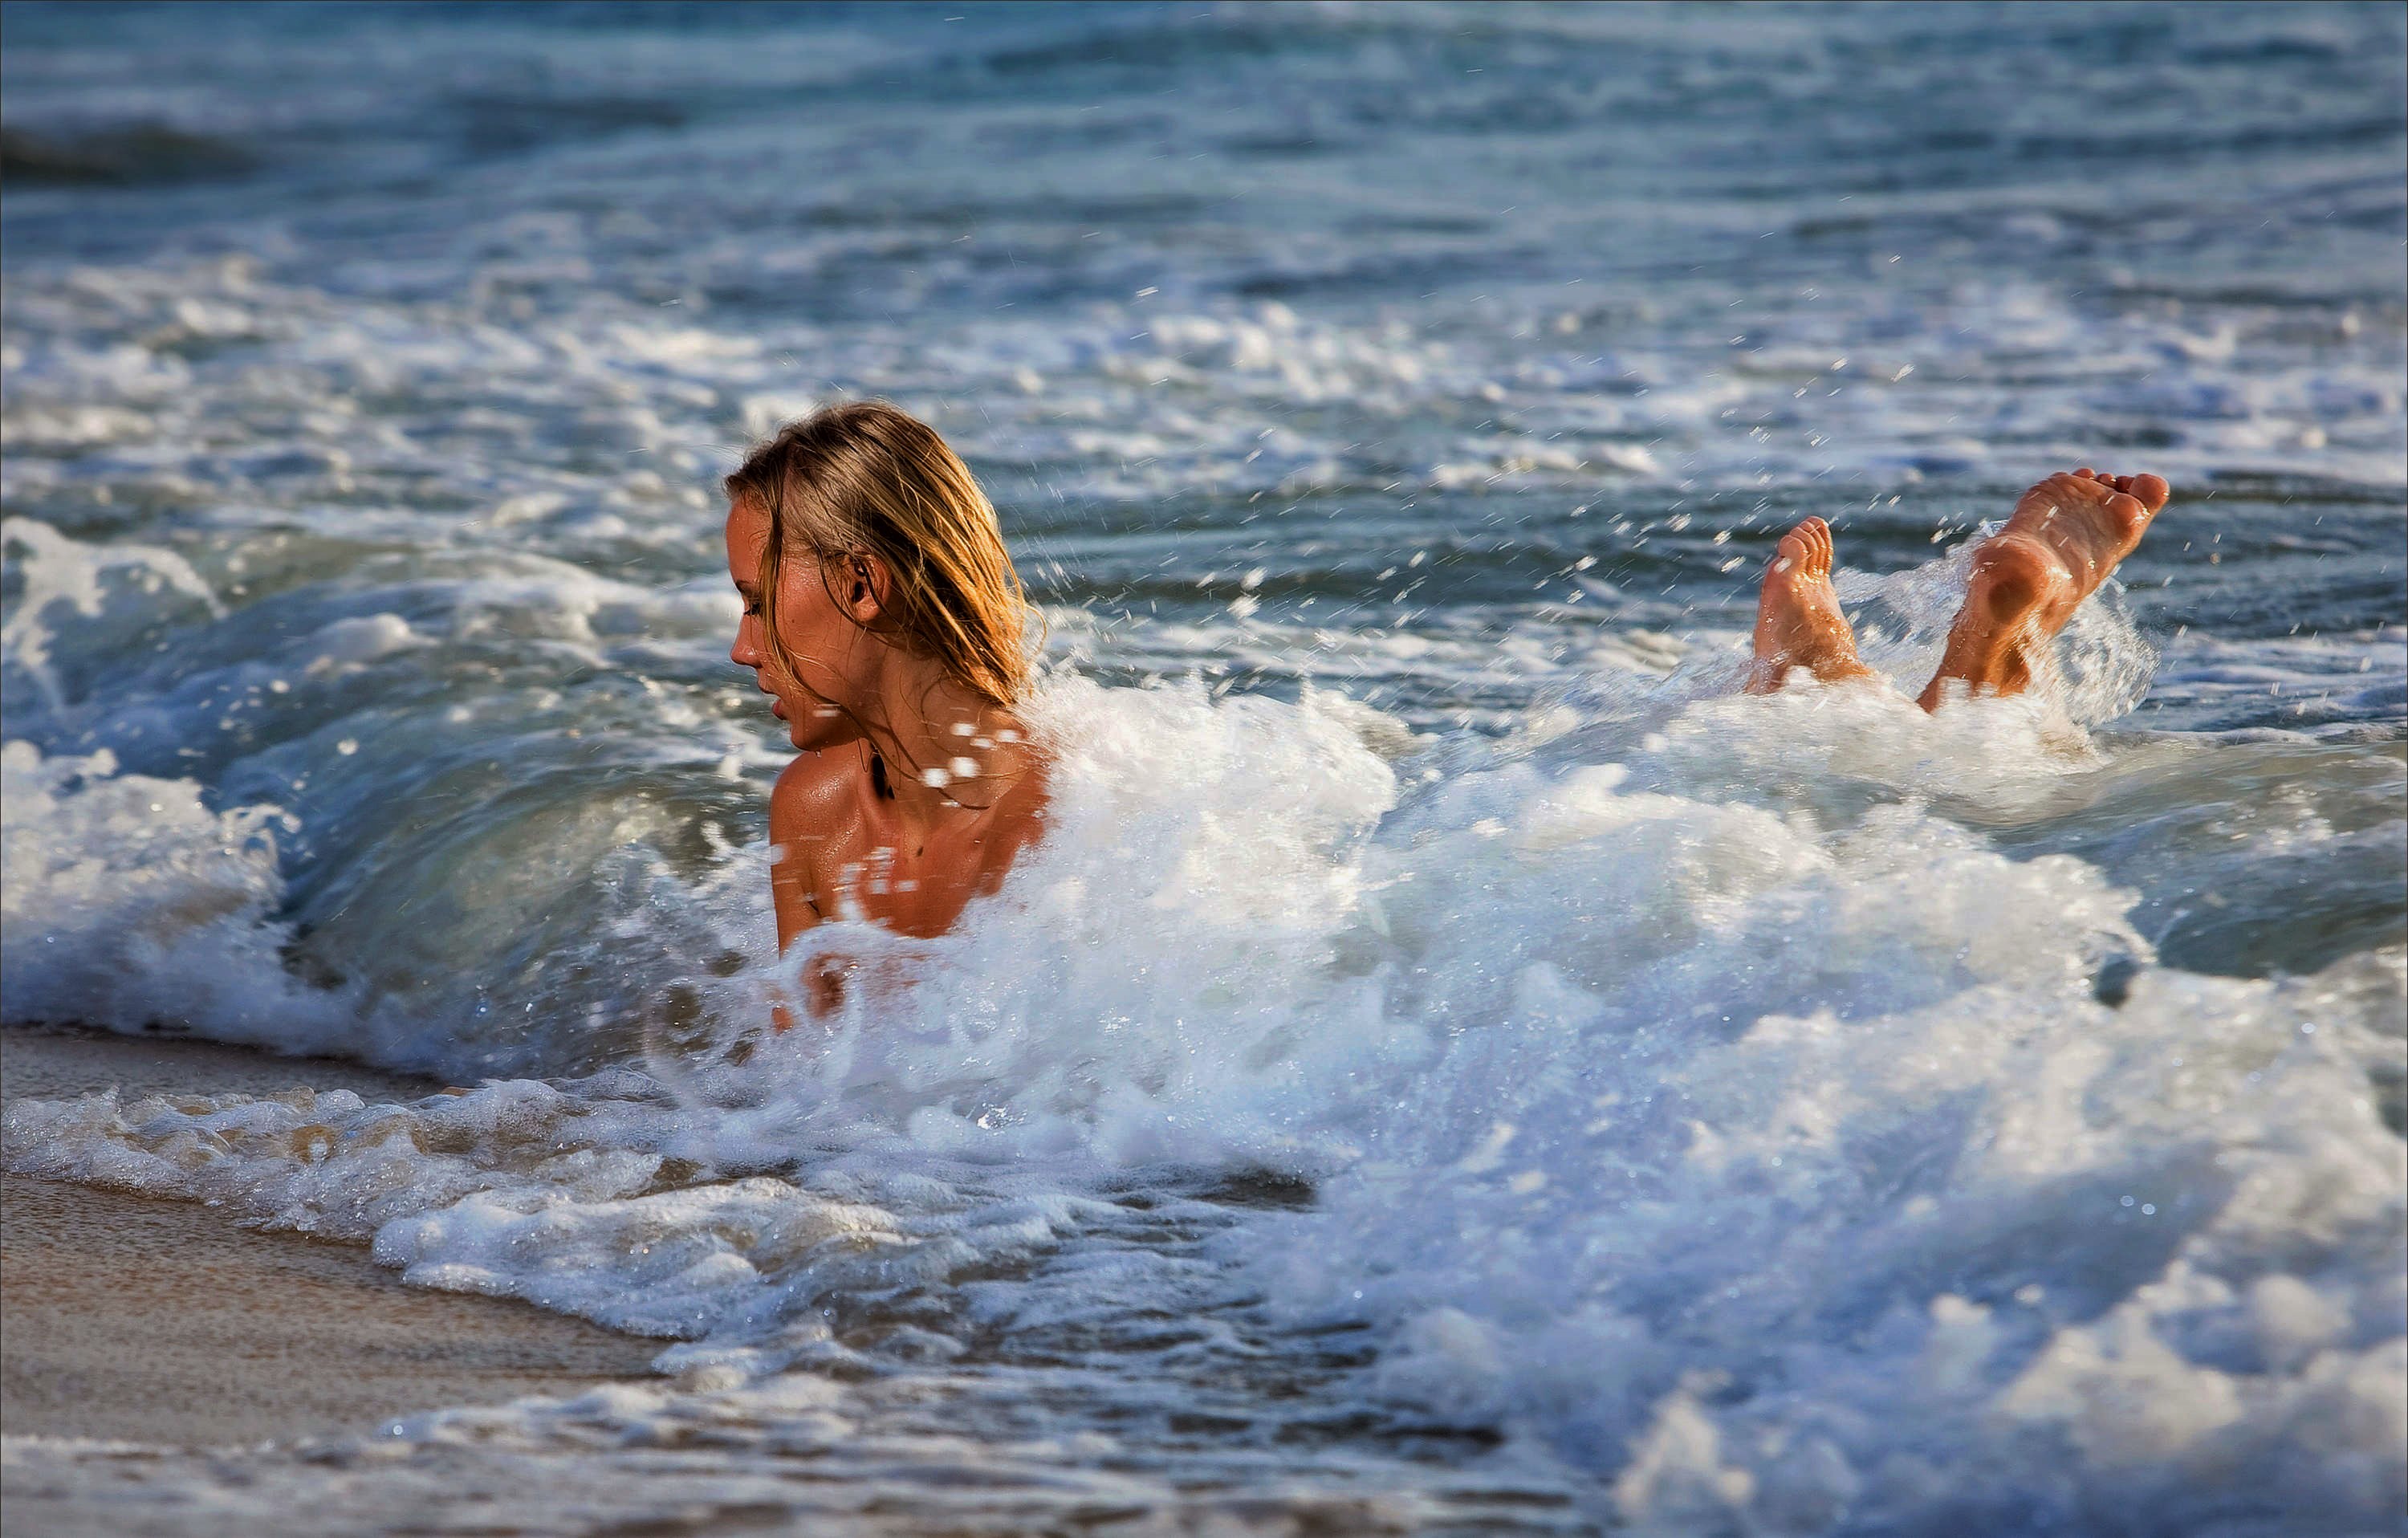 Я купаюсь. Девушка-море. Девушка на волне. Девушка купается в море. Девушка в волнах моря.